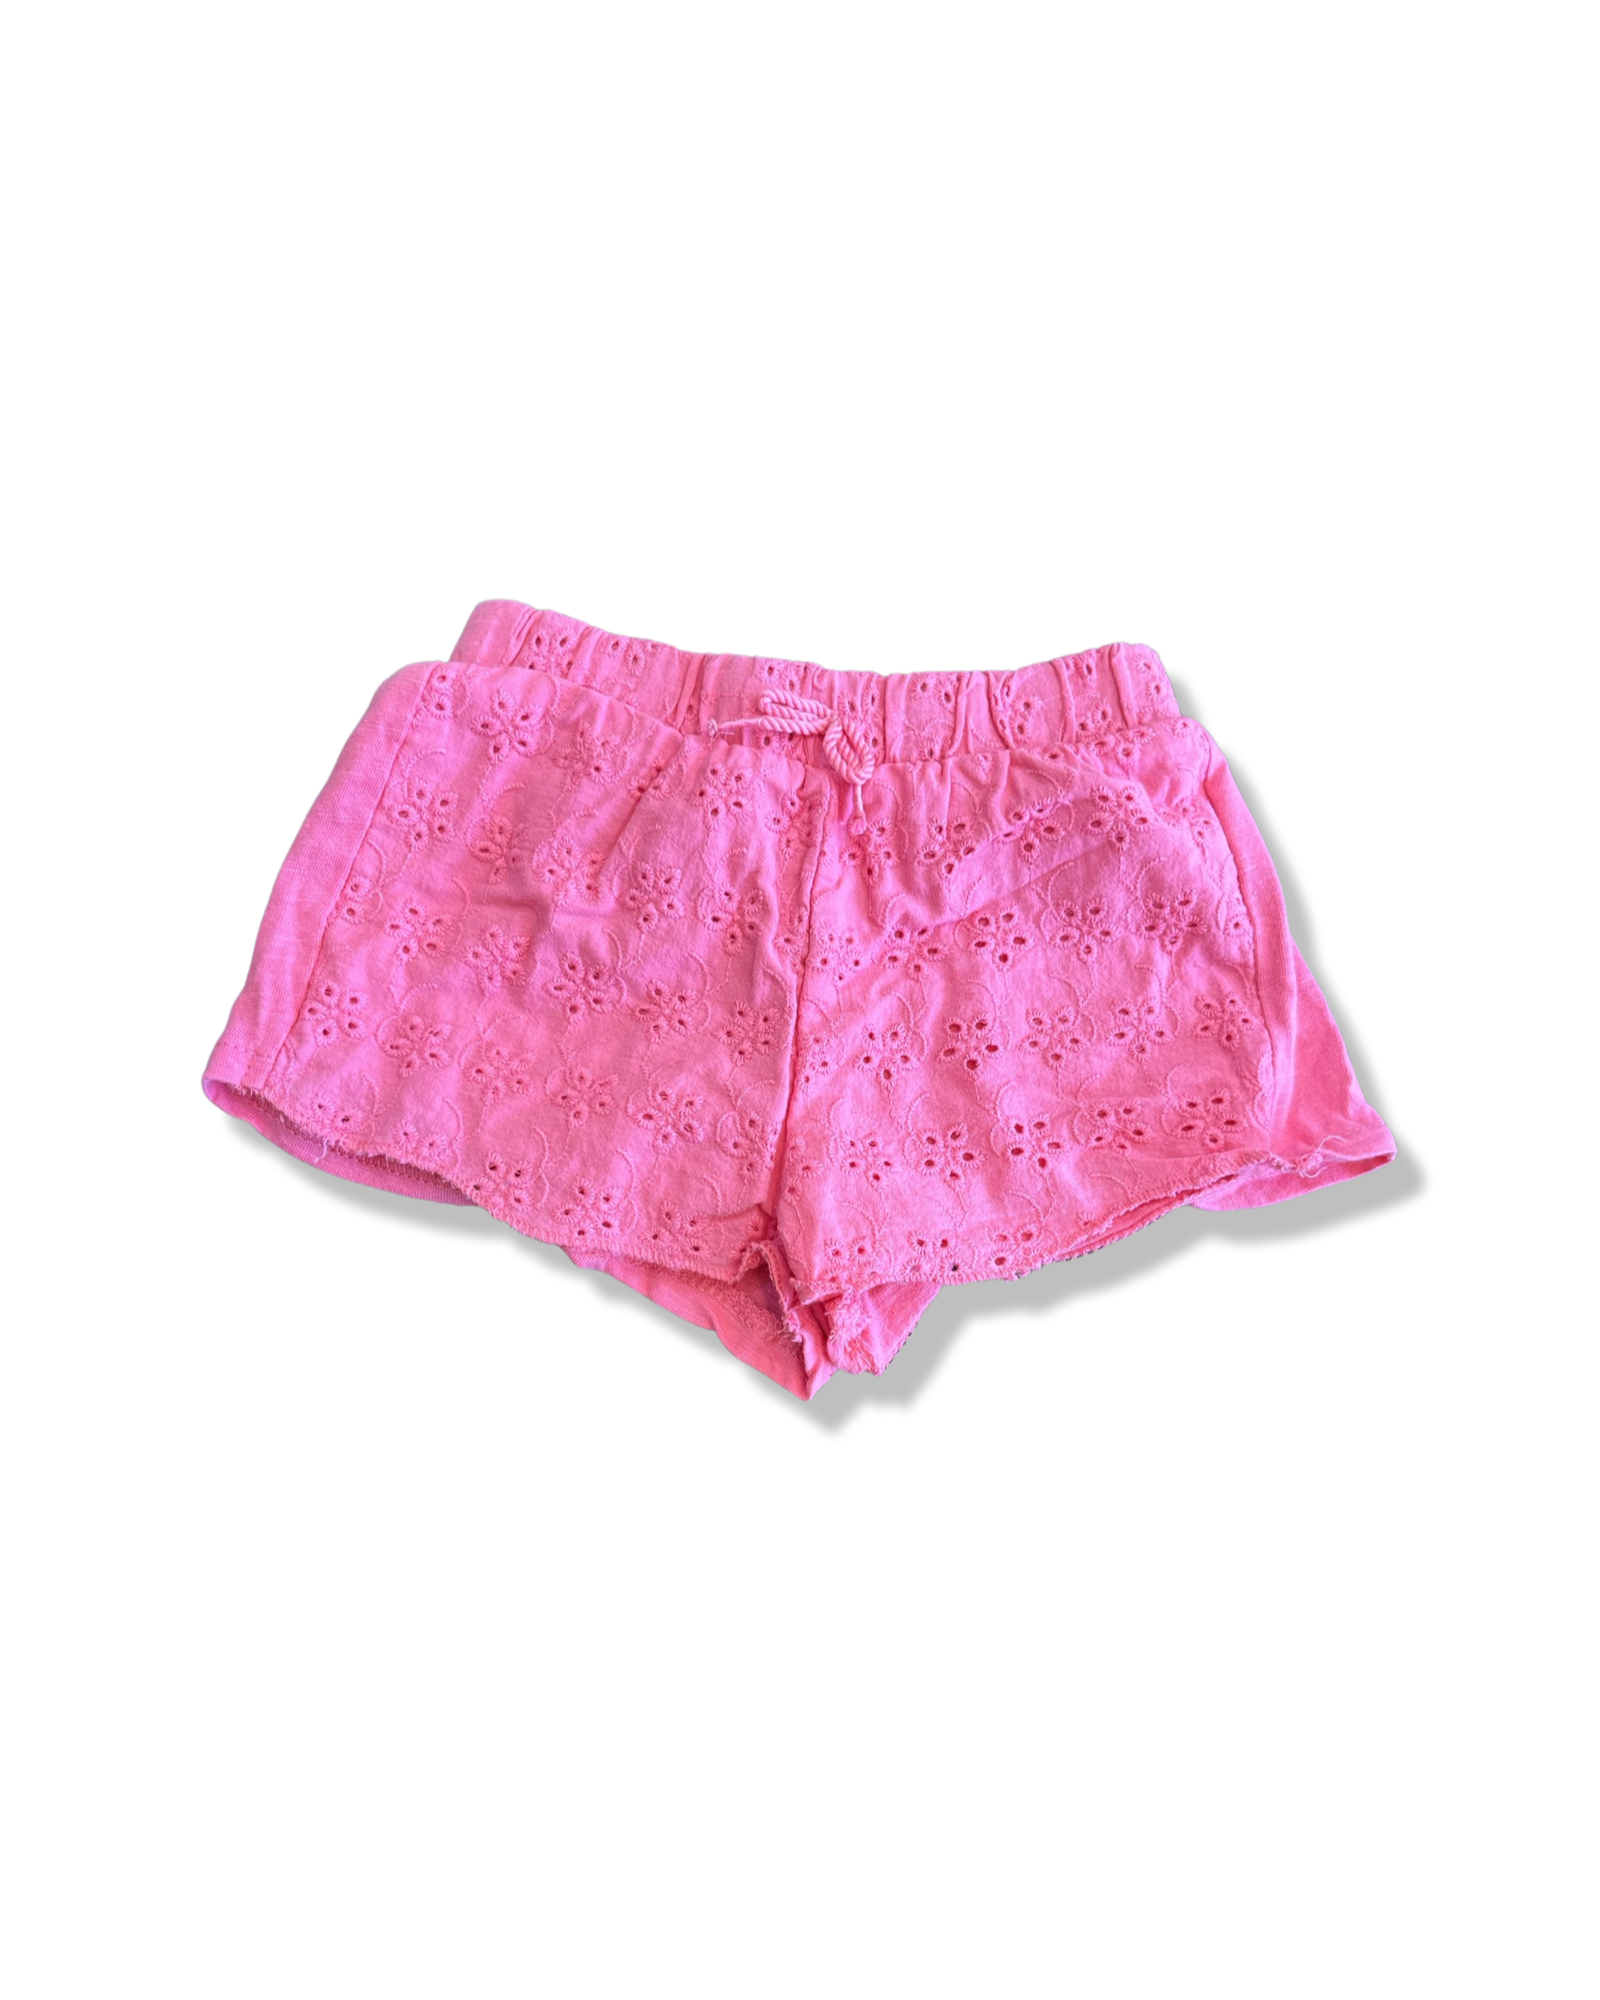 Zara Pink Shorts (12-18M)